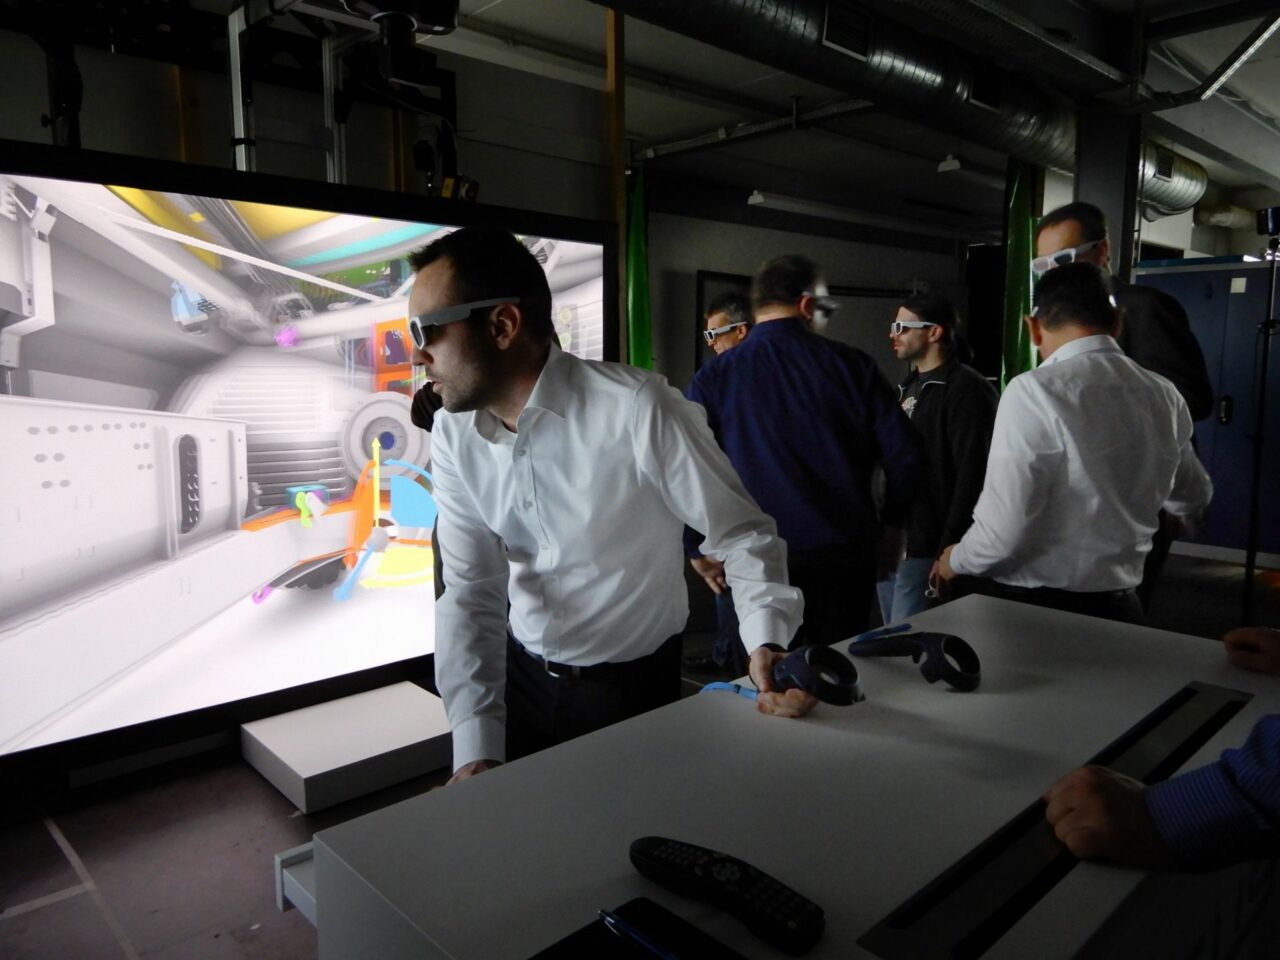 Ein Mann steht aktiv mit einer Virtual Reality-Brille vor einem Bildschirm und ist tief in die virtuelle Welt involviert. Auf dem Bildschirm ist ein Herstellungsgerät zu sehen, das aktiv etwas produziert. Die immersive Natur der VR-Brille ermöglicht es dem Mann, sich direkt mit dem Produktionsprozess der Maschine auseinanderzusetzen.